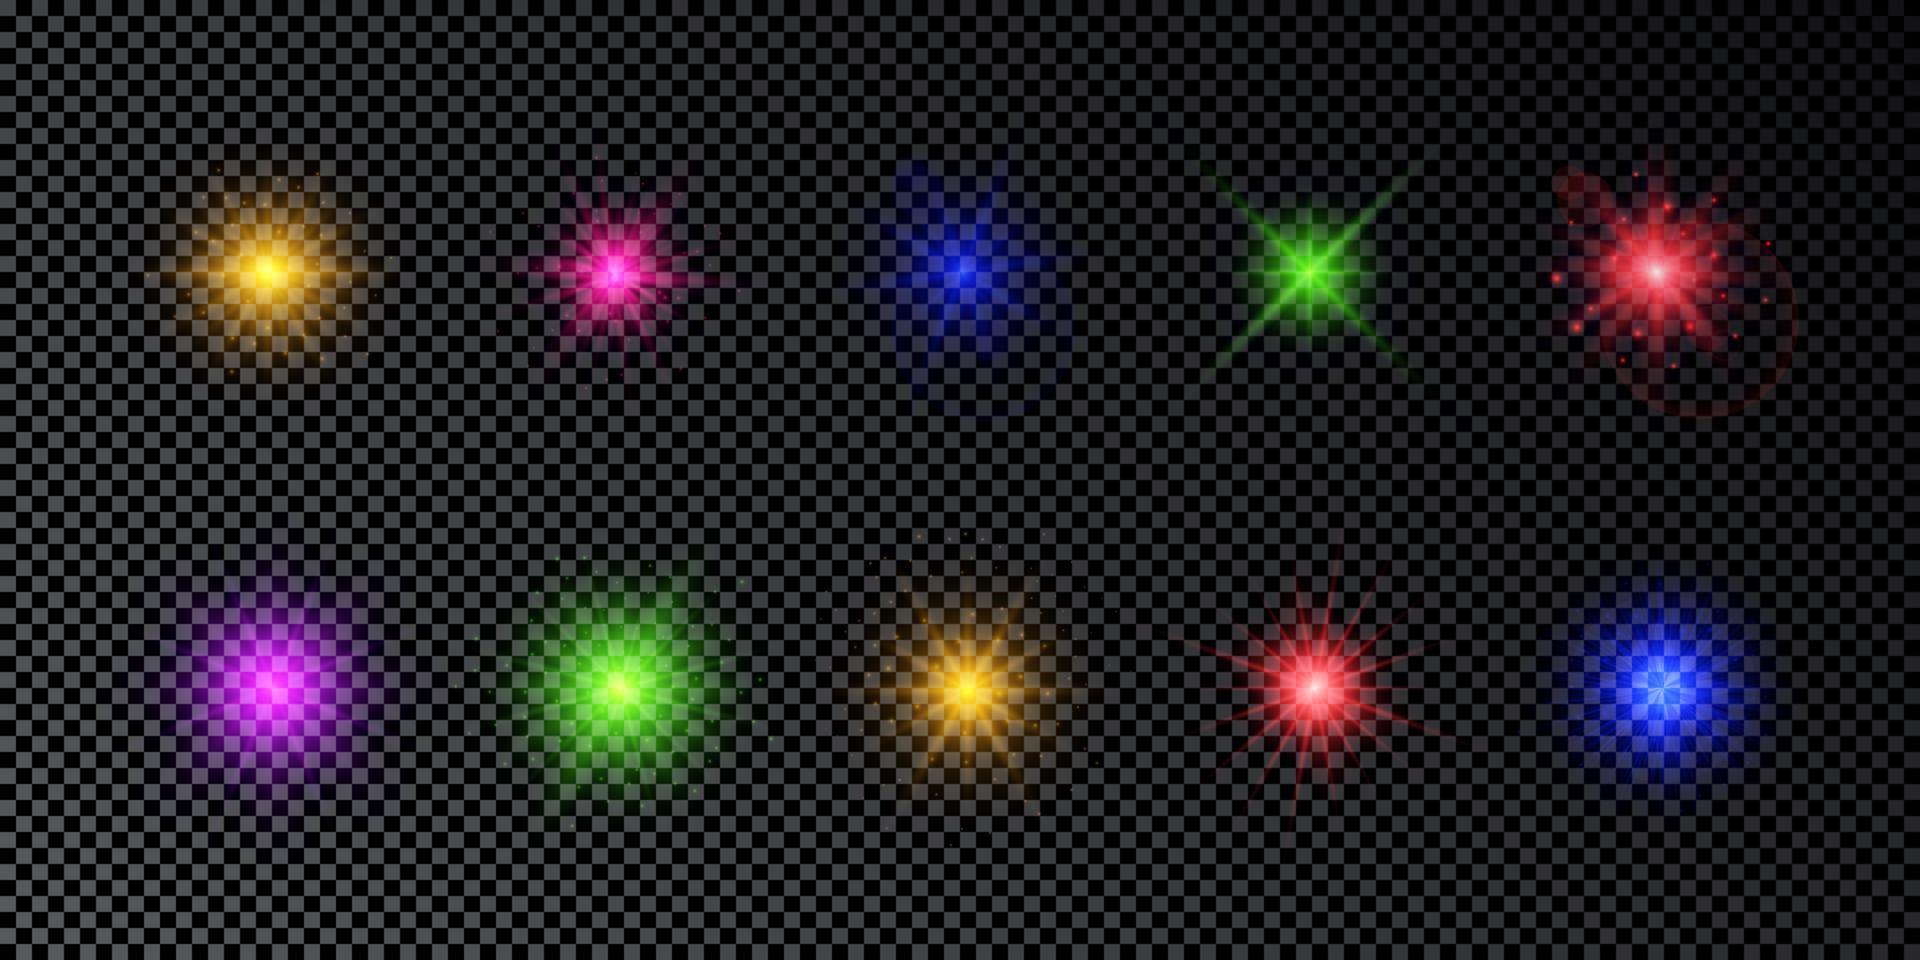 Lichteffekt von Lens Flares. satz von mehrfarbigen leuchtenden lichtern starburst-effekten mit funkeln auf einem dunklen transparenten hintergrund. Vektor-Illustration vektor